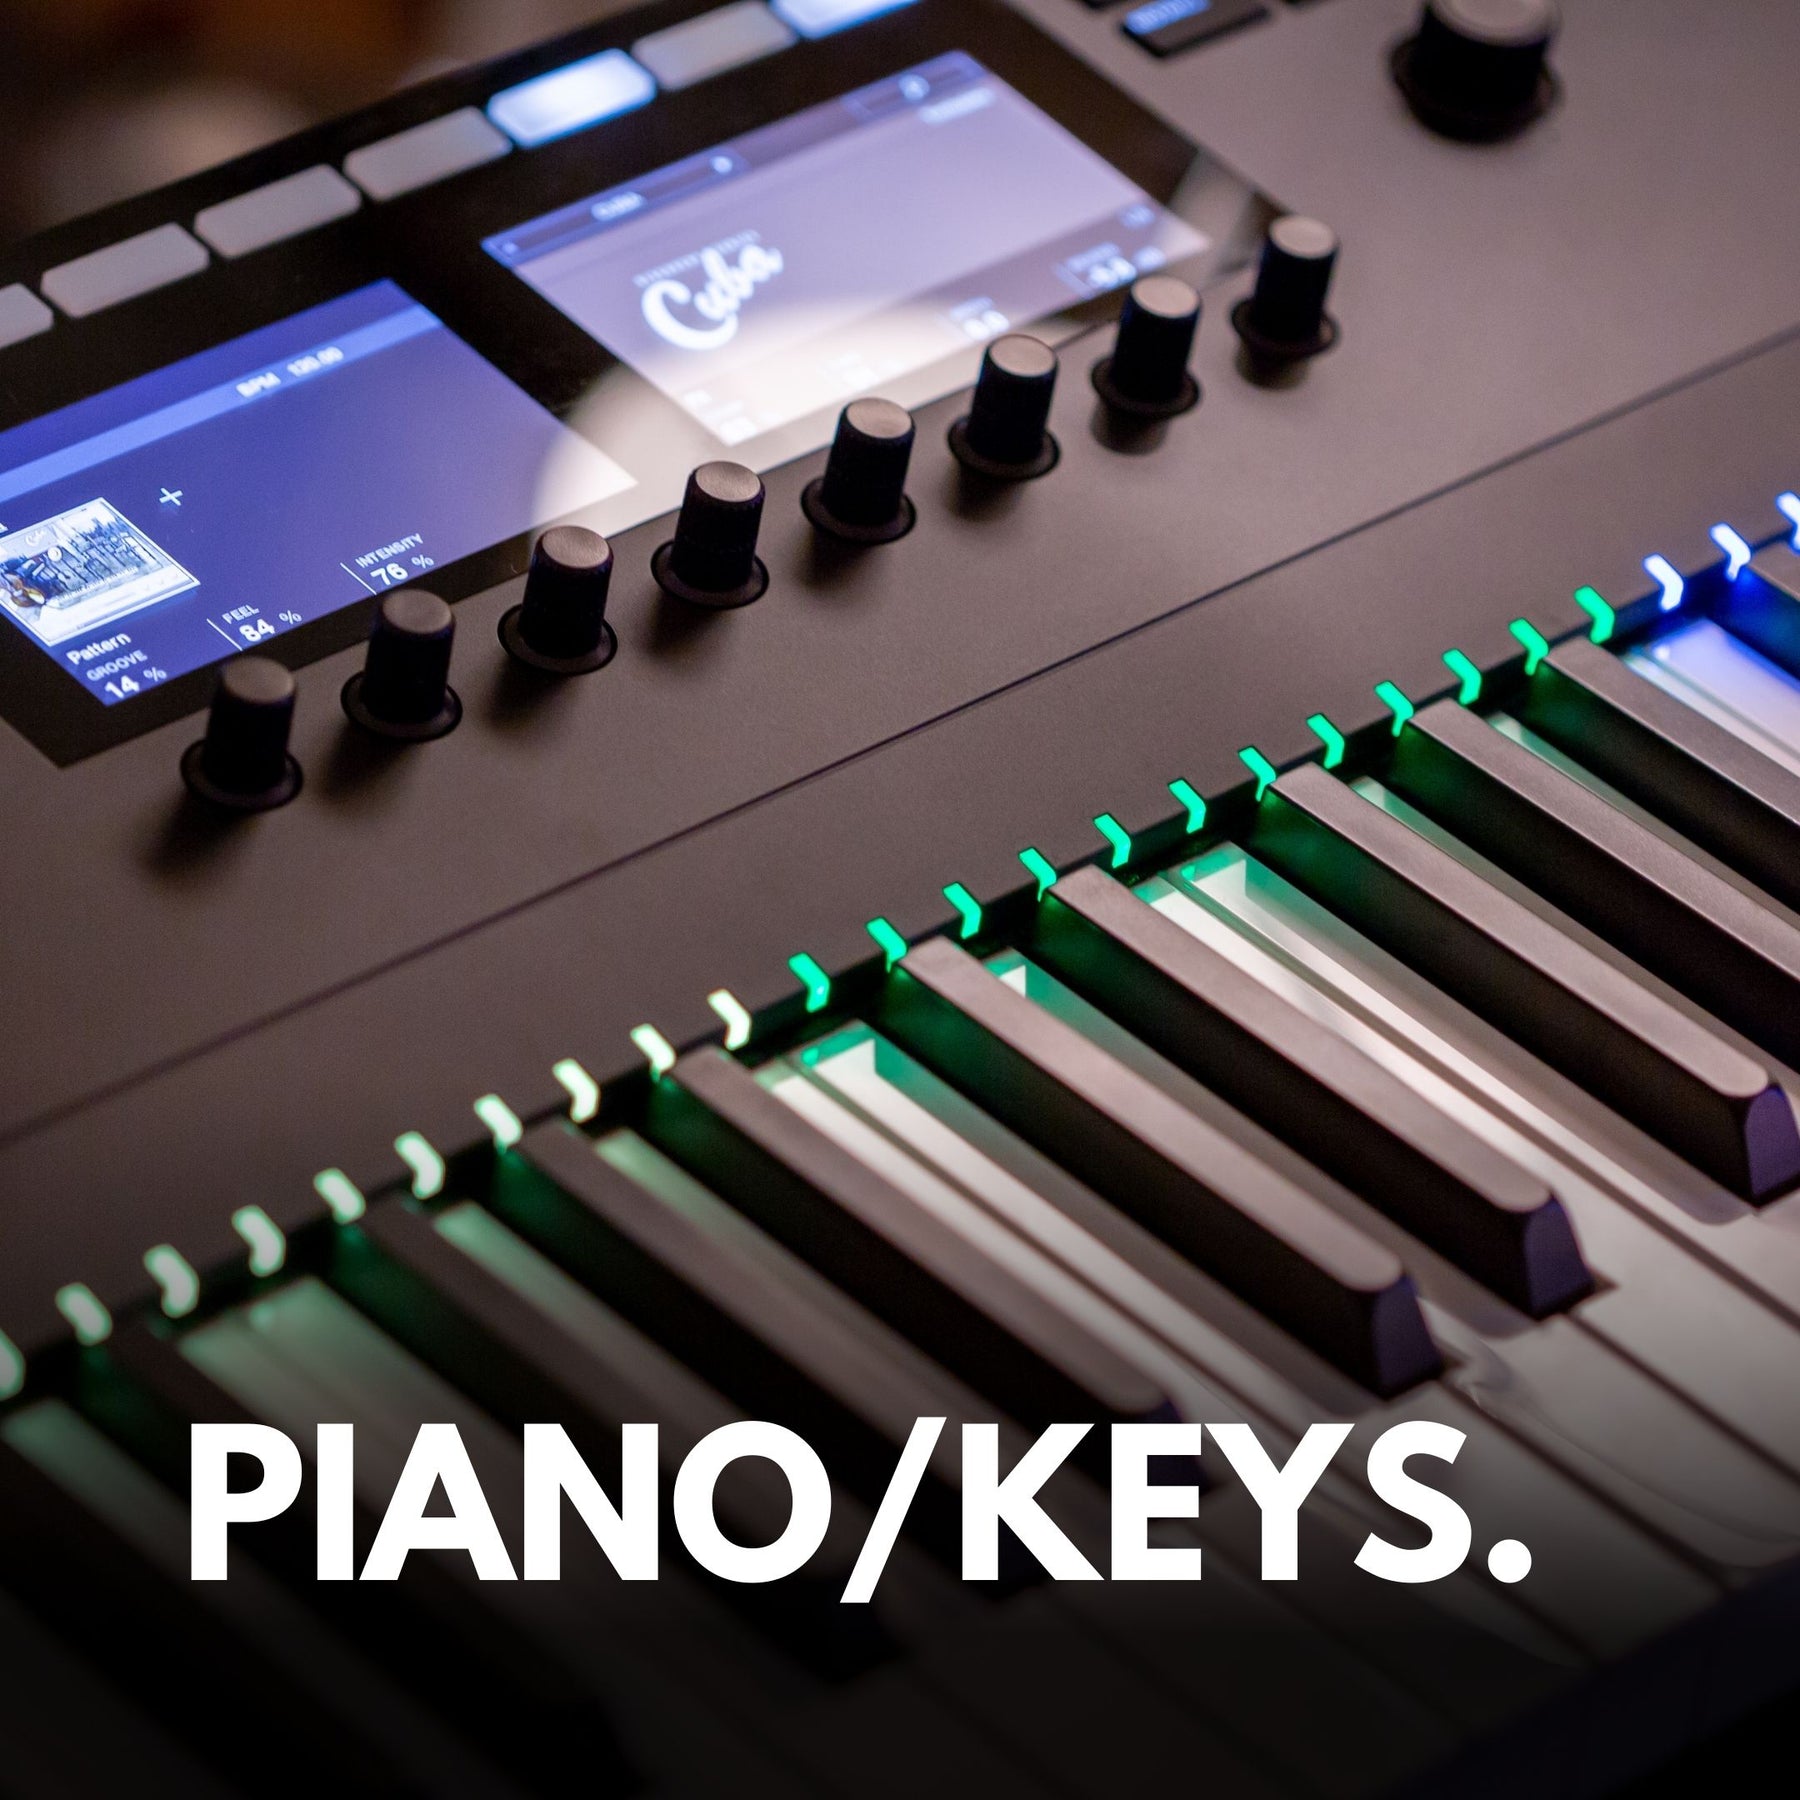 Piano/Keys